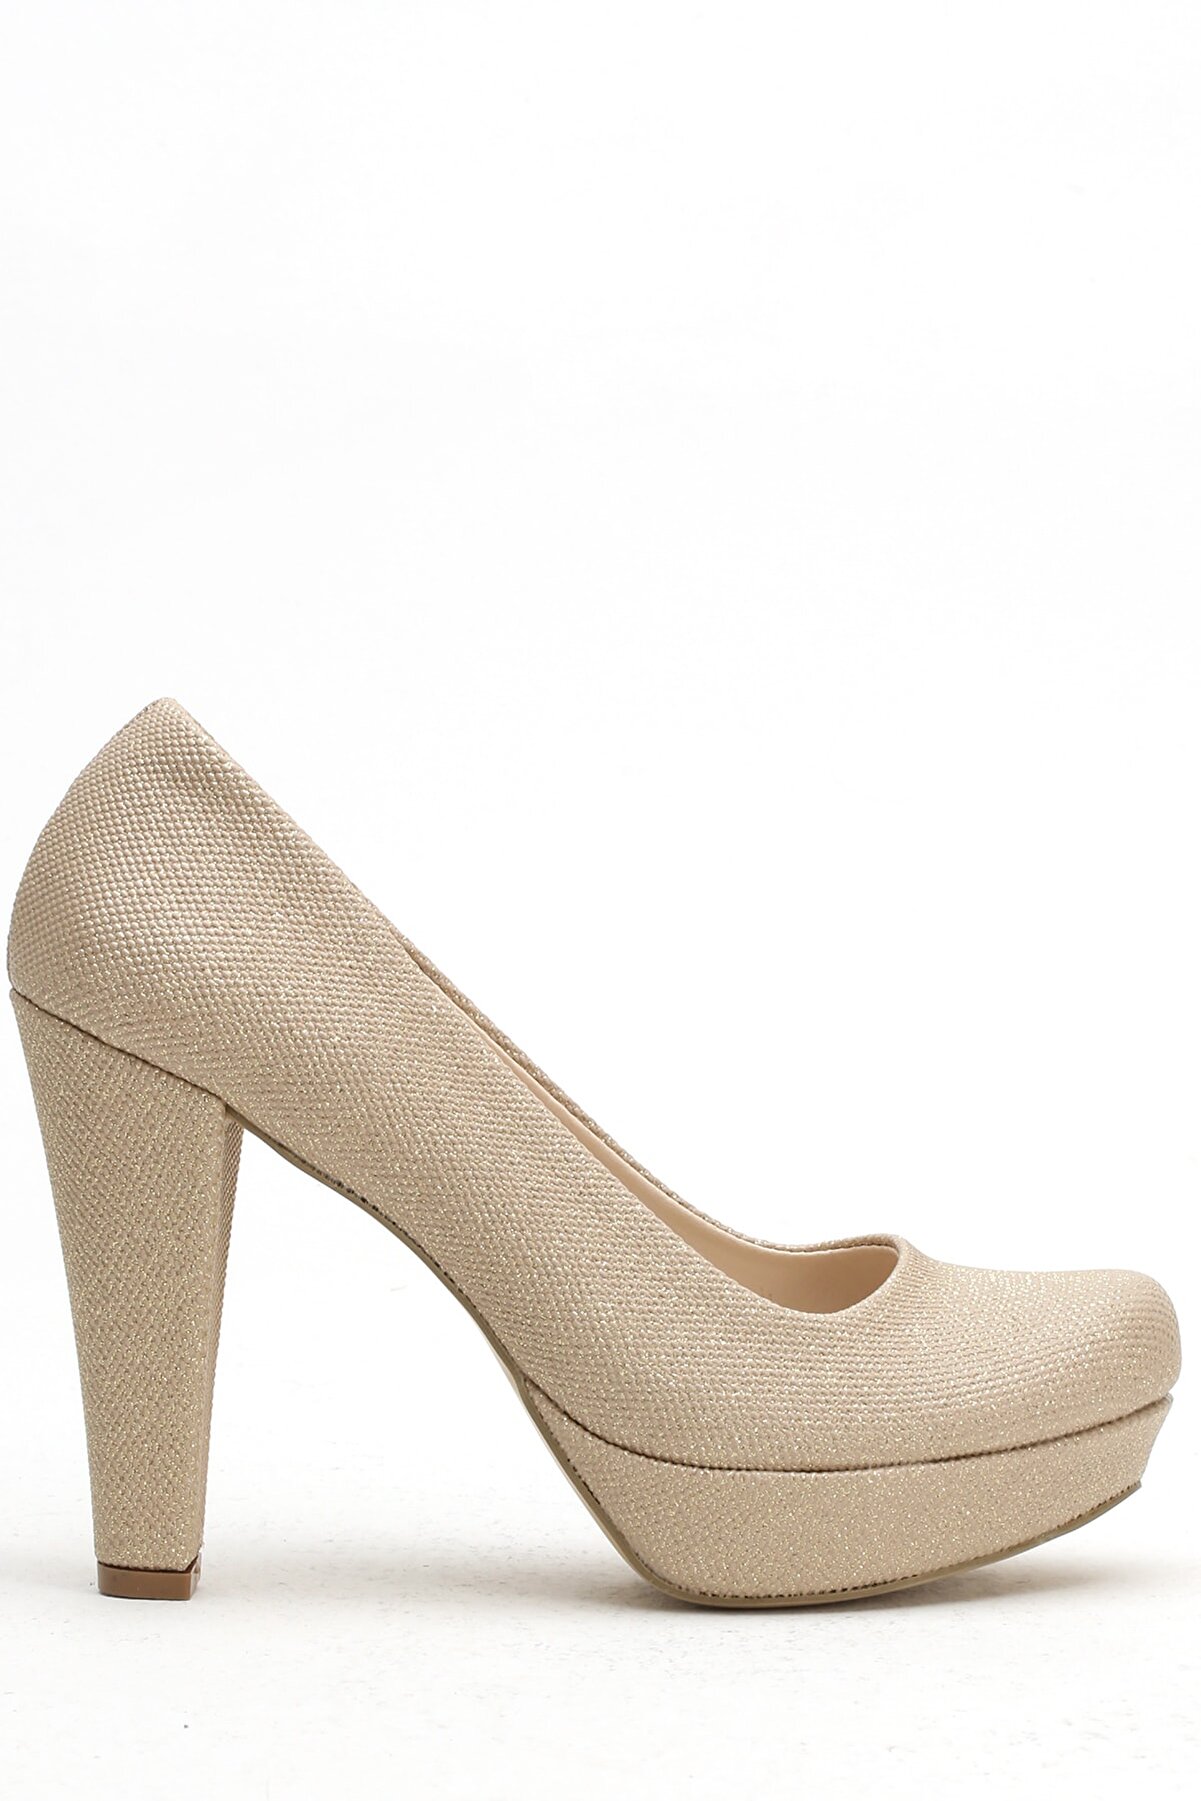 Ayakkabı Modası Altın Kadın Topuklu Ayakkabı 3800-20-119002